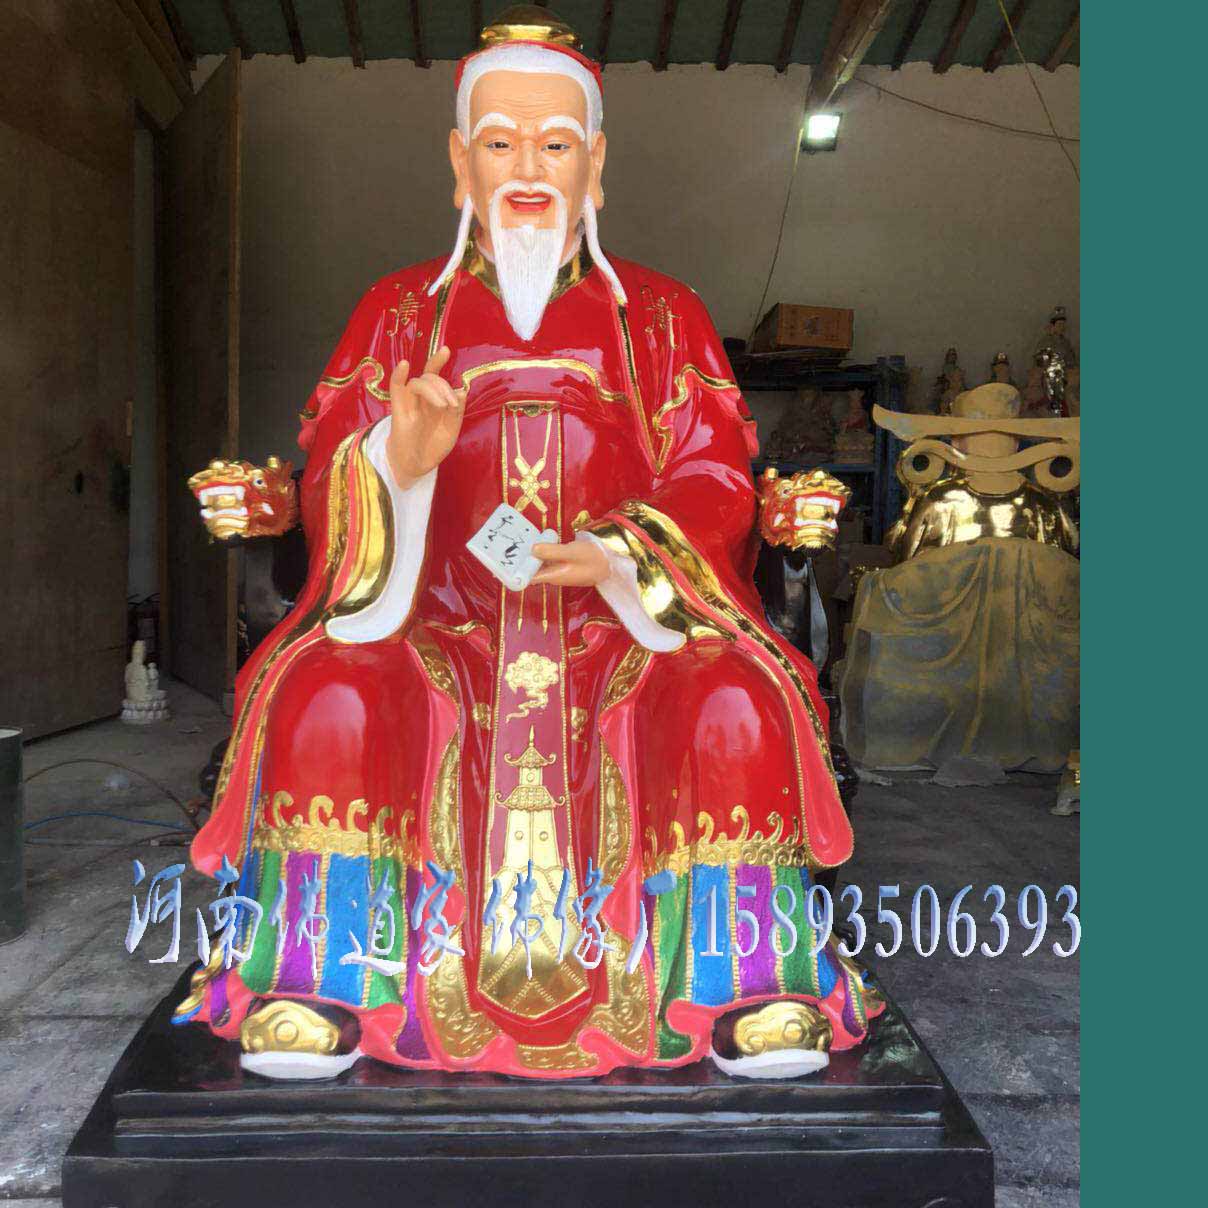 【携程攻略】北京月老祠景点,鹤发白须的月下老人专管世间风月，成就感天动地的婚缘。虔心城拜，结…